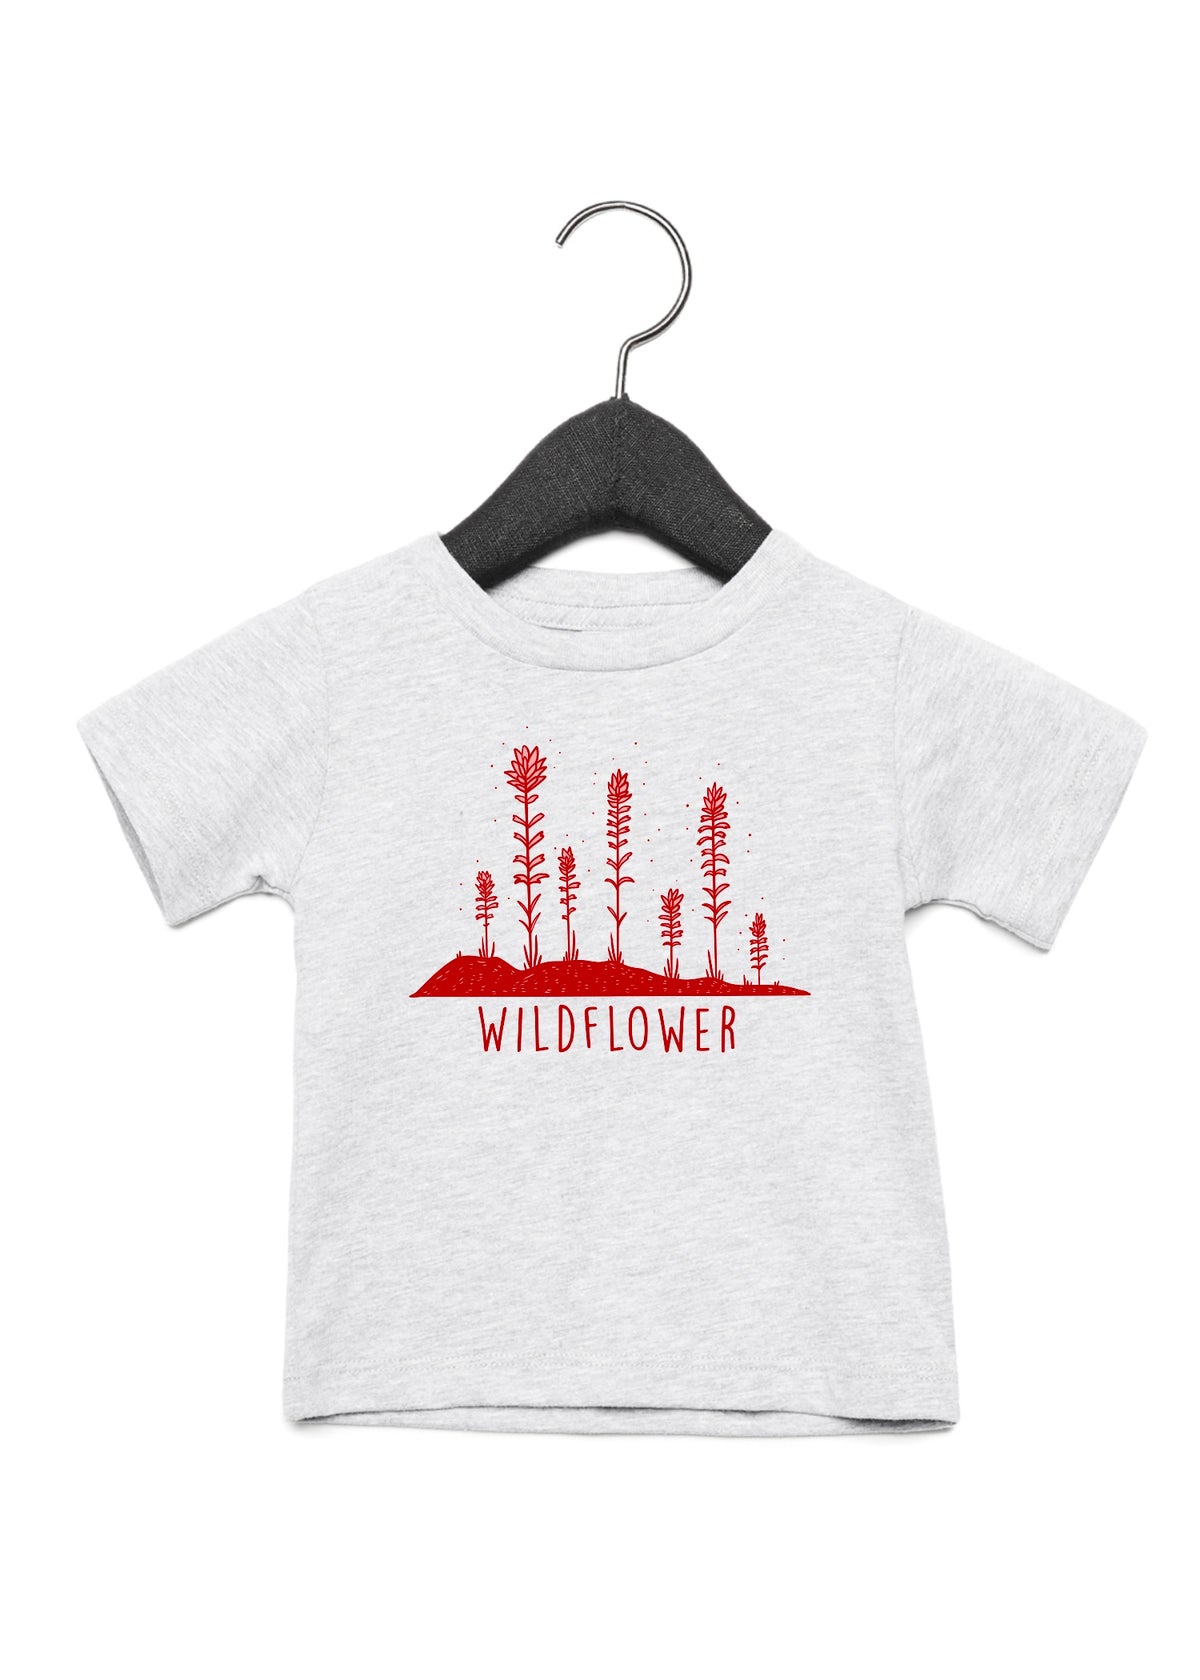 Red Paintbrush Wildflower Toddler T-Shirt